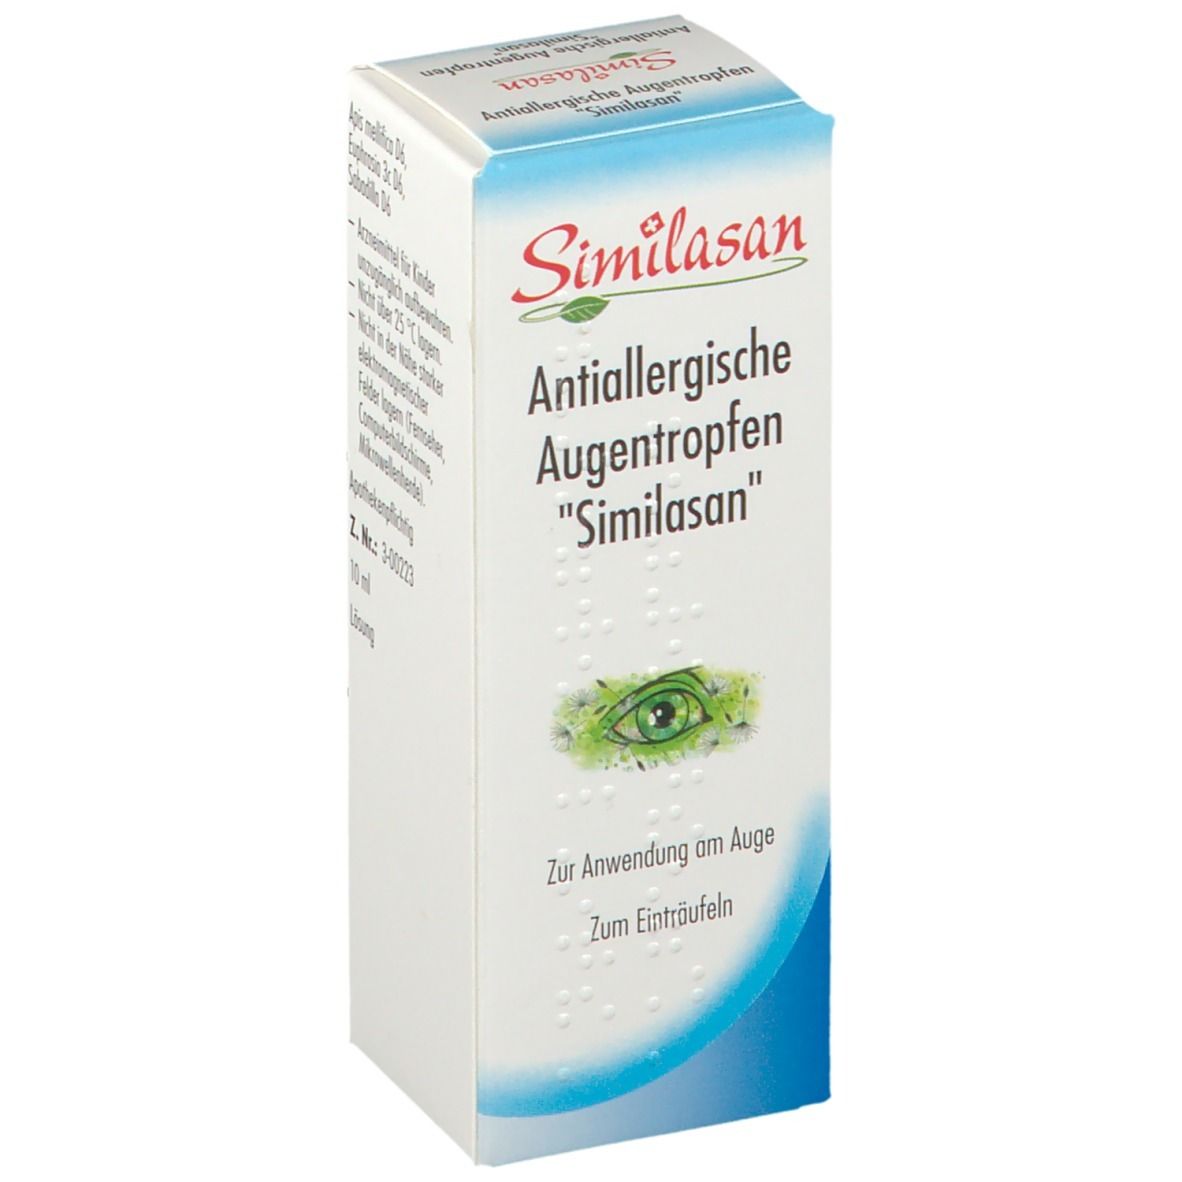 Antiallergische Augentropfen Similasan - jetzt 10% sparen mit Code similasan10